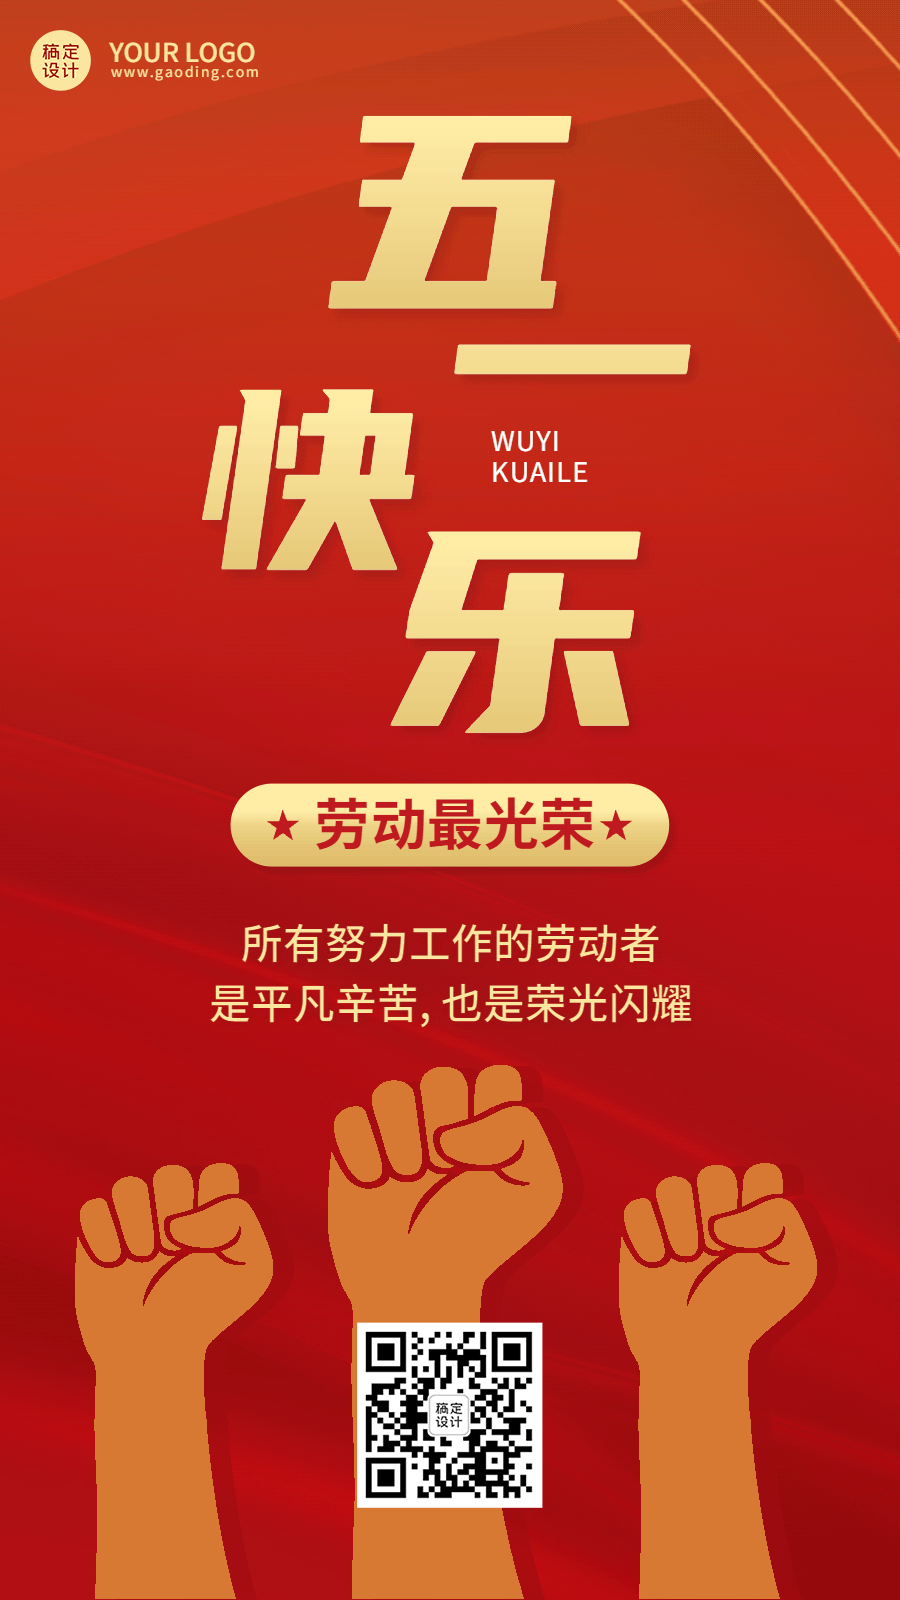 劳动节节日祝福排版动态海报